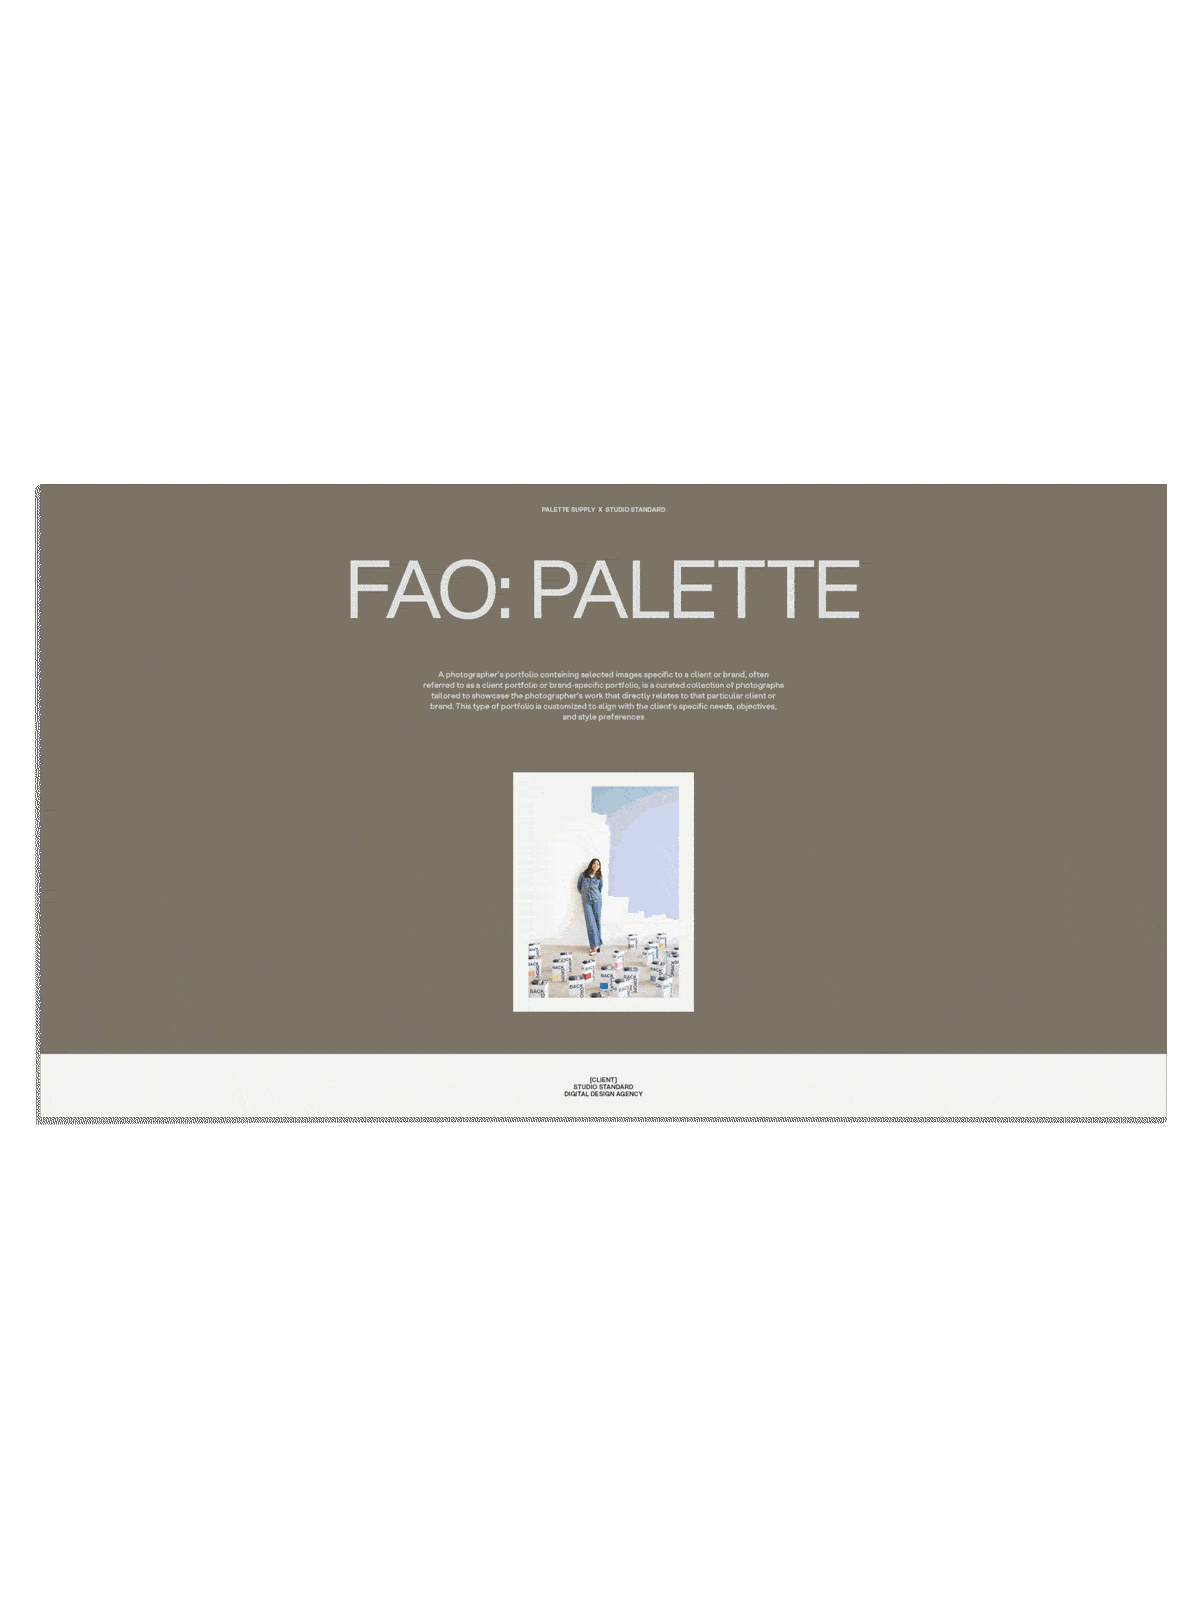 SS x Palette: Brand Specific Portfolio - Palette Supply